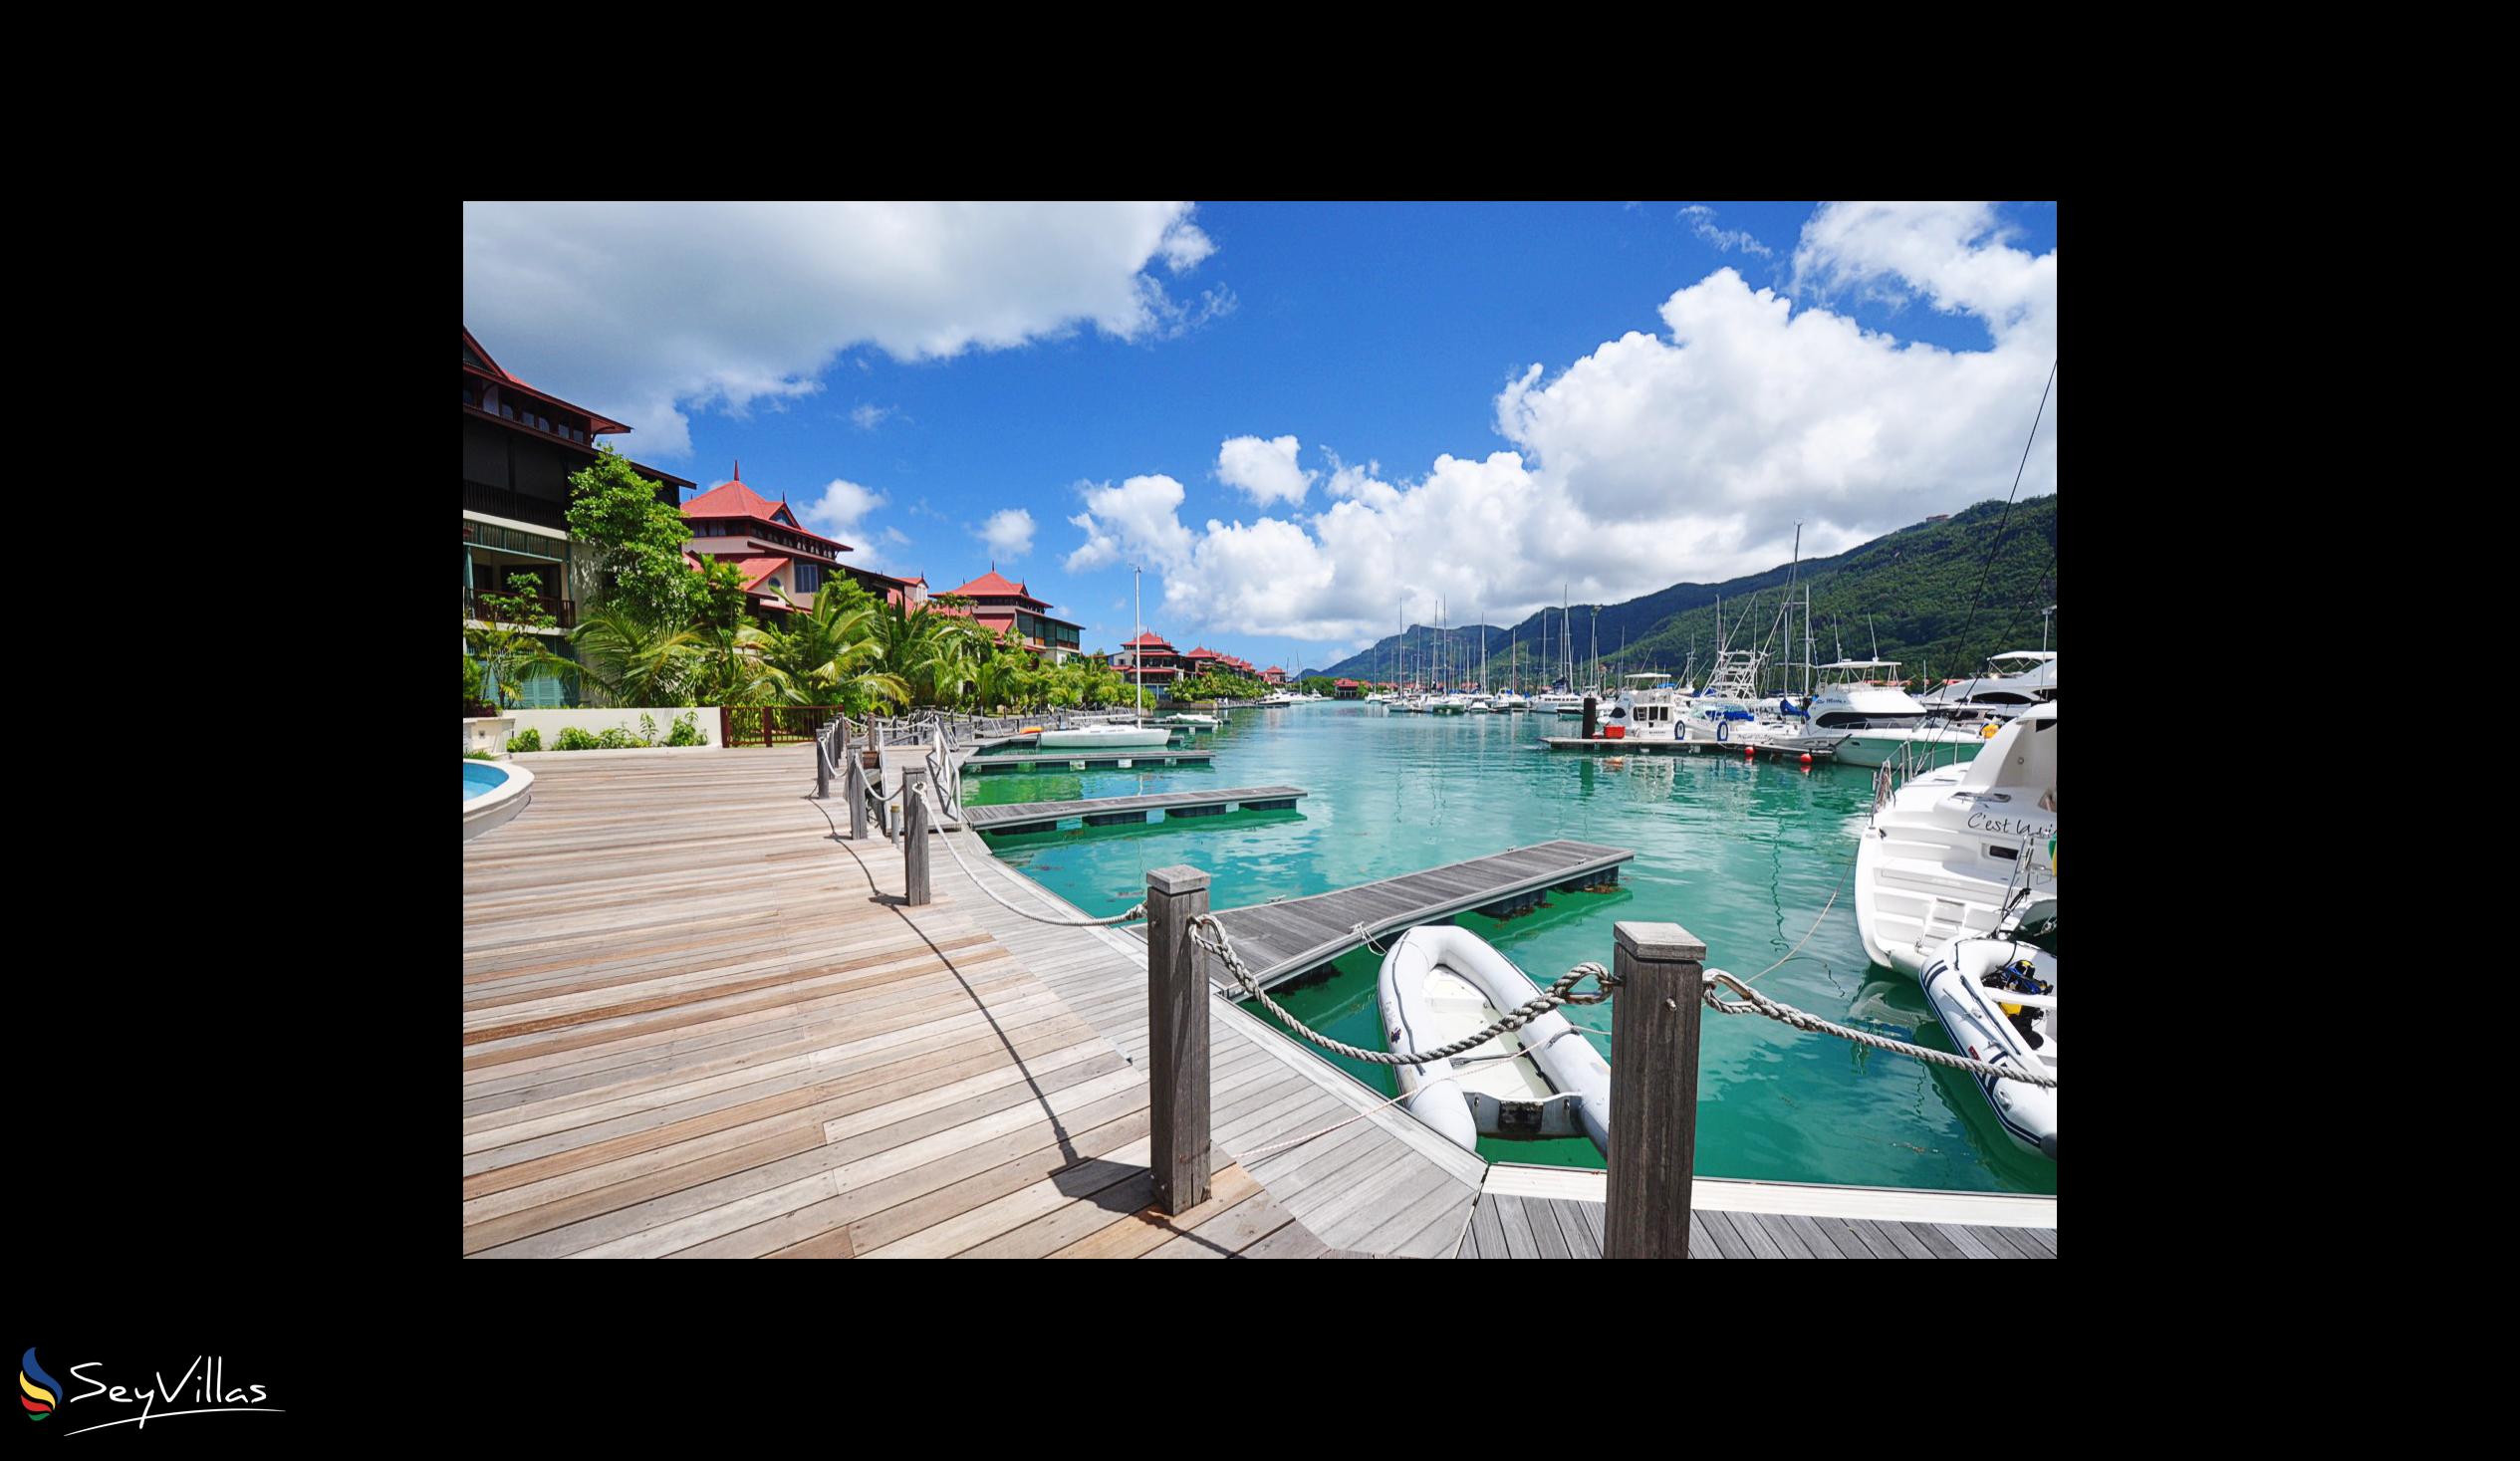 Photo 60: Eden Bleu Hotel - Outdoor area - Mahé (Seychelles)